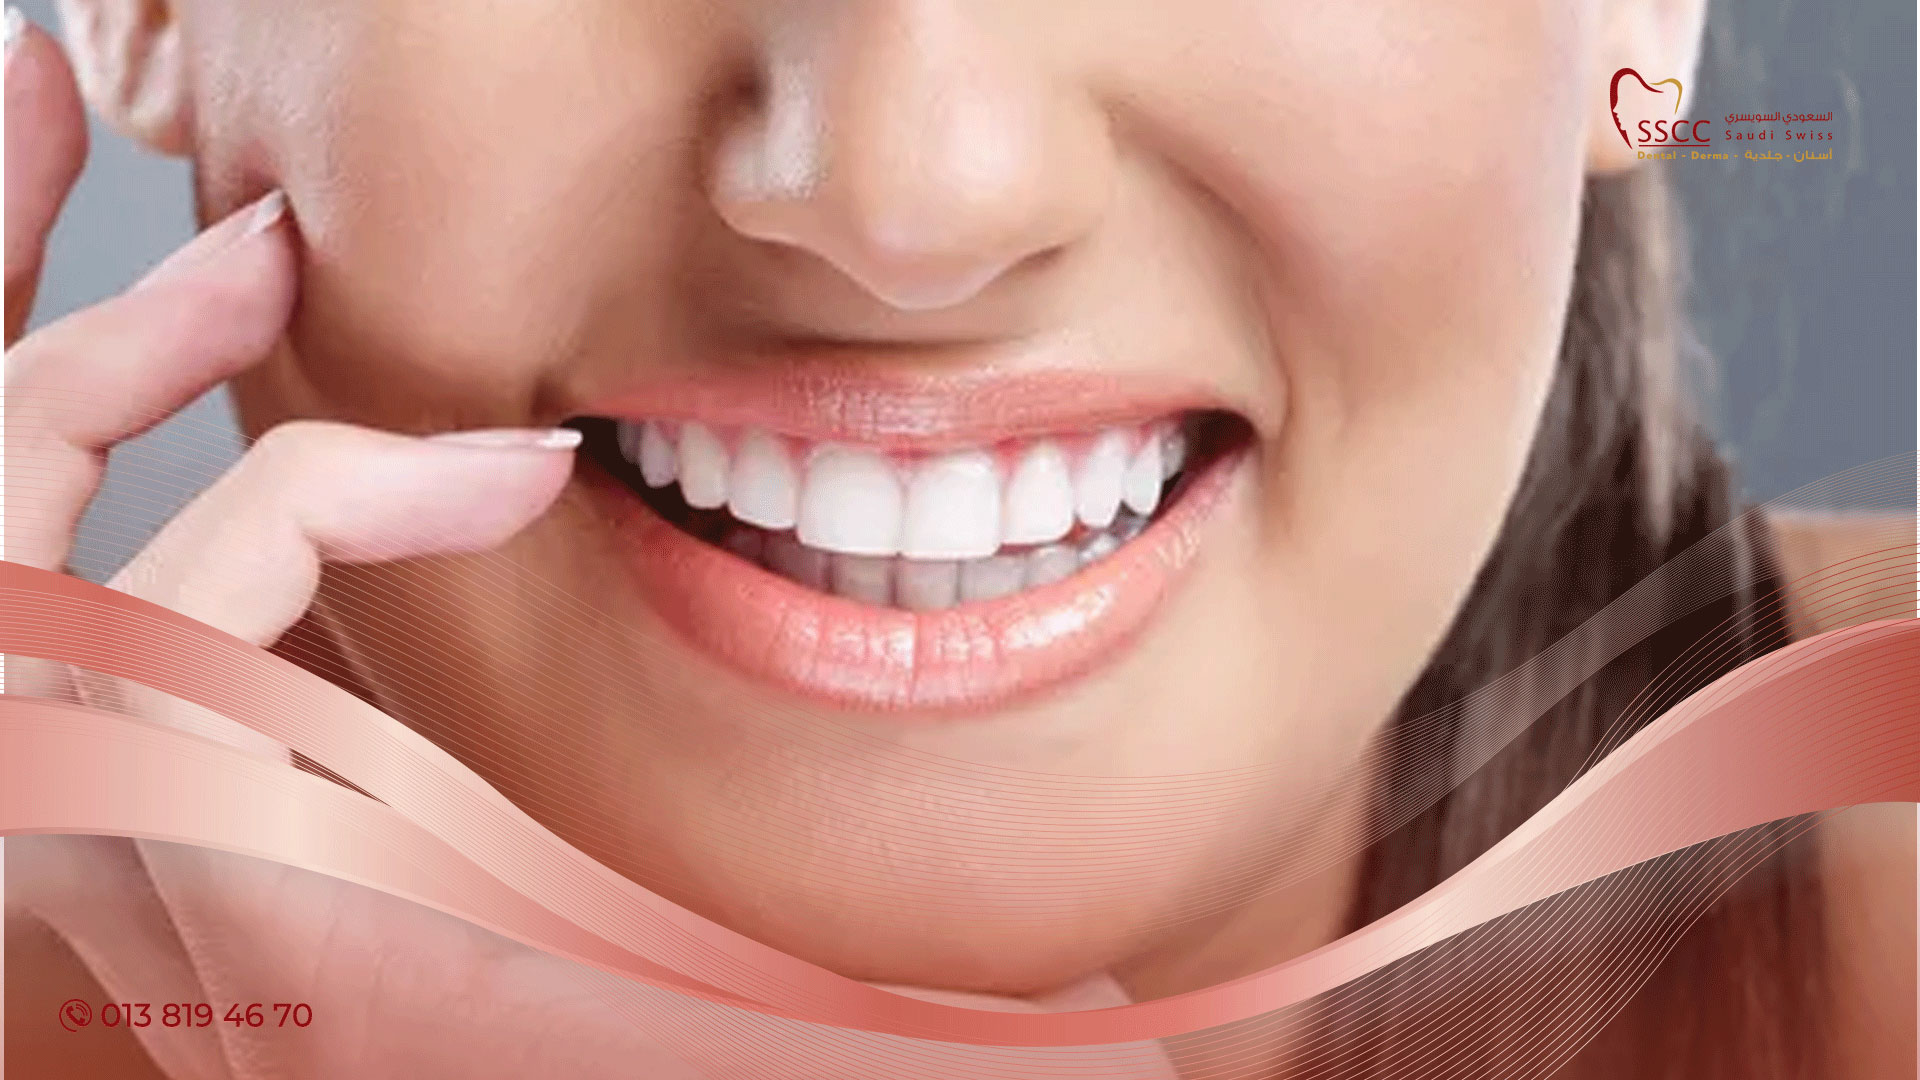 علاج حساسية الأسنان بعد التبييض